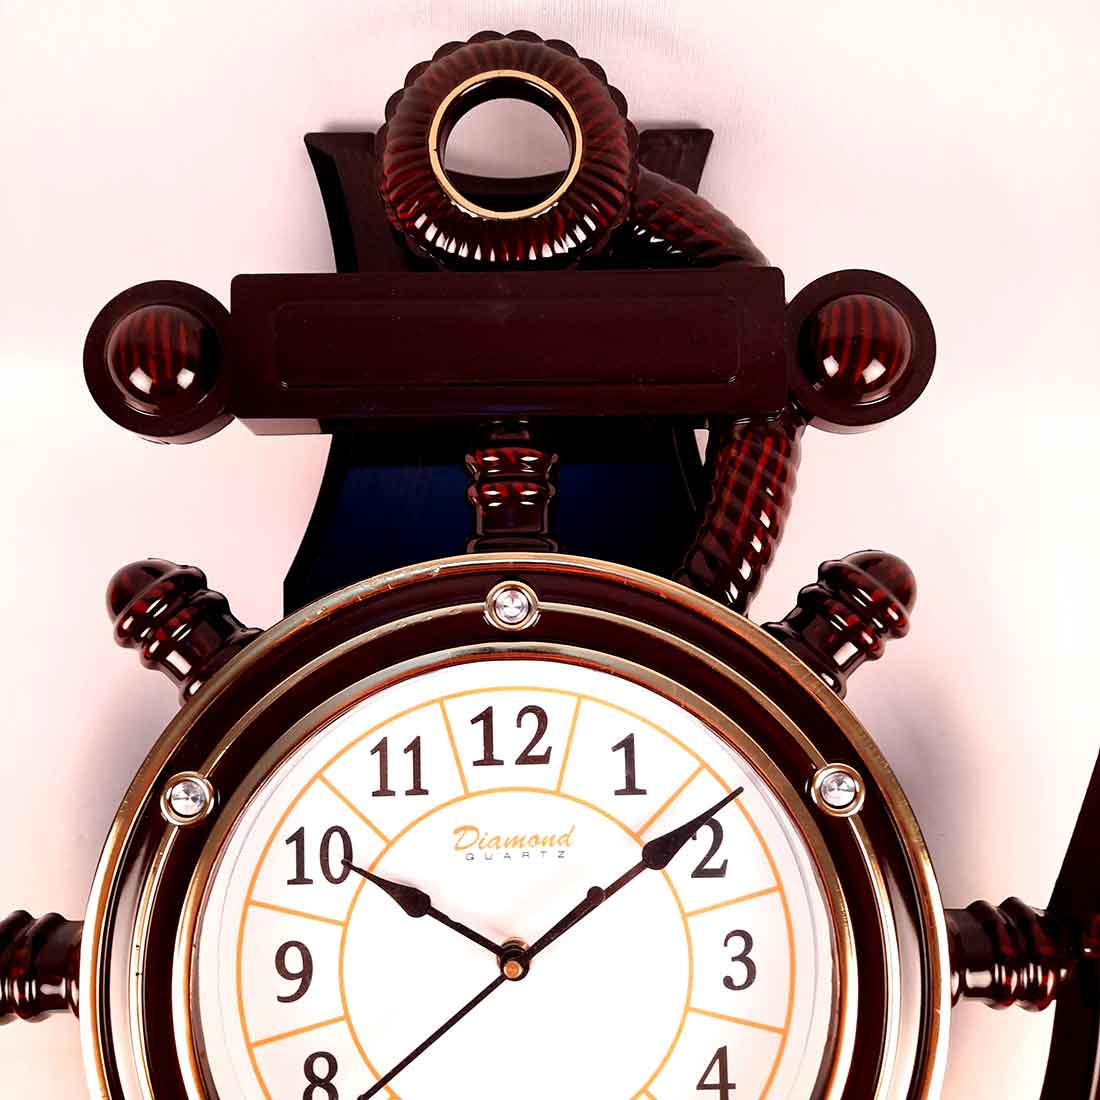 दीवार घड़ी डिजाइन||खूबसूरत दीवार घड़ी||Beautiful diy for wall clock||new  designs wall clock model|| - YouTube